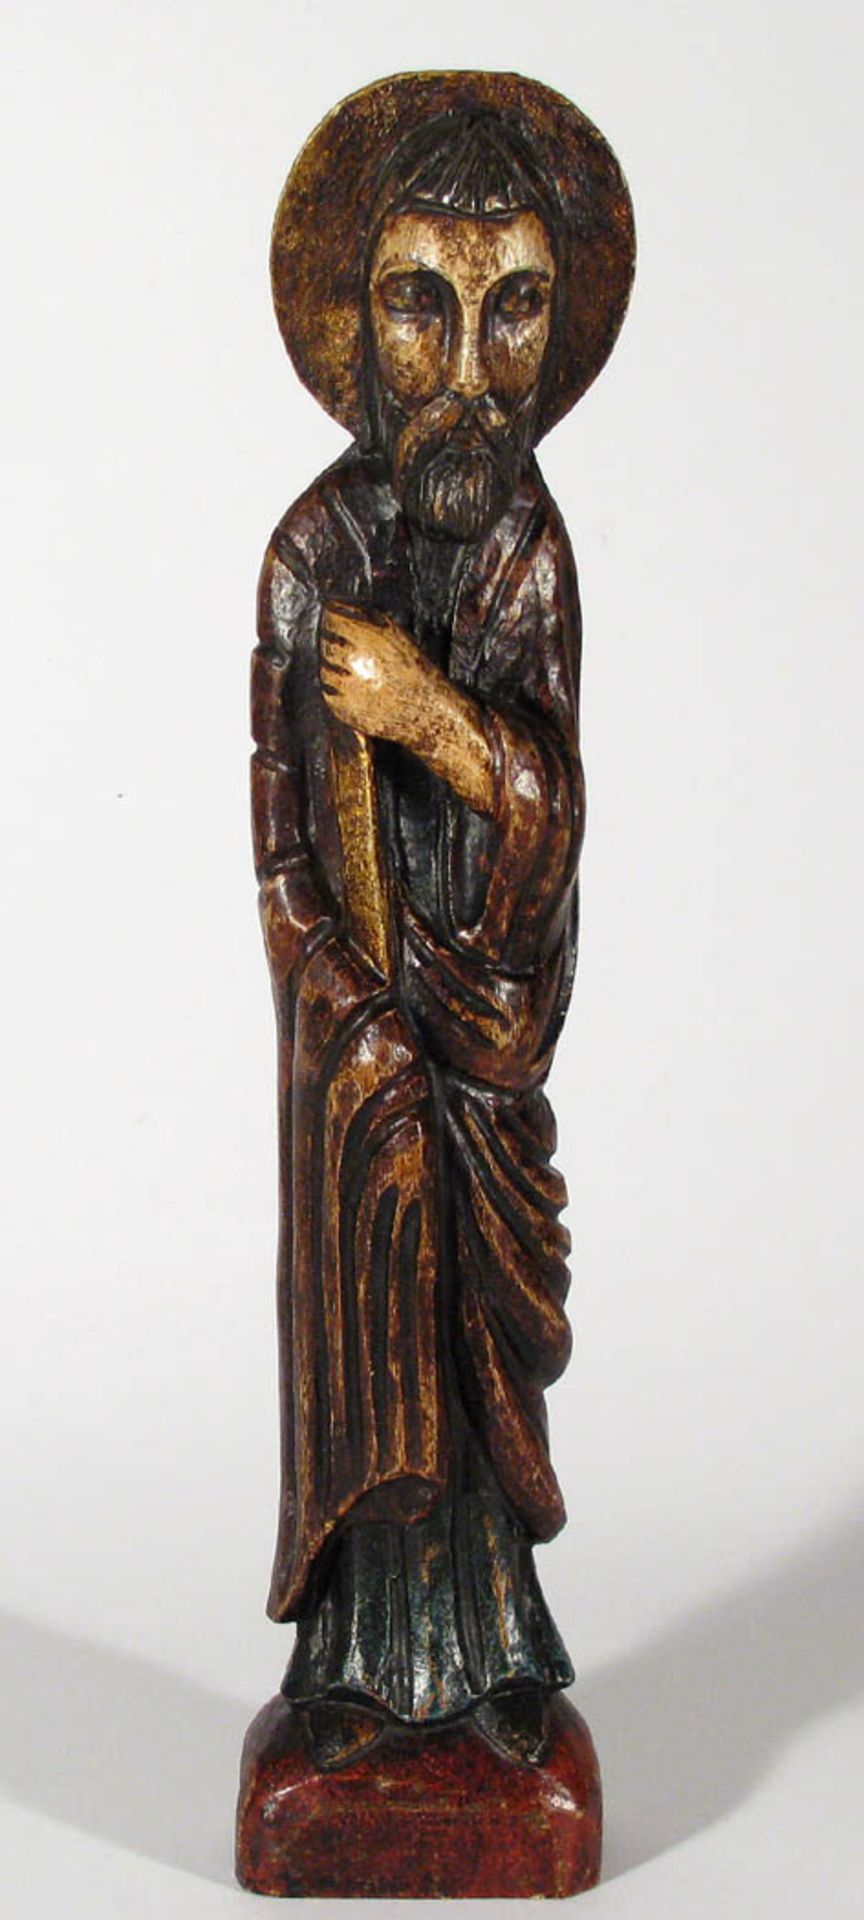 Heiligenfigur, SpanienBärtiger Heiliger, vollplastisch geschnitzt, polychrom bemalt und vergoldet.